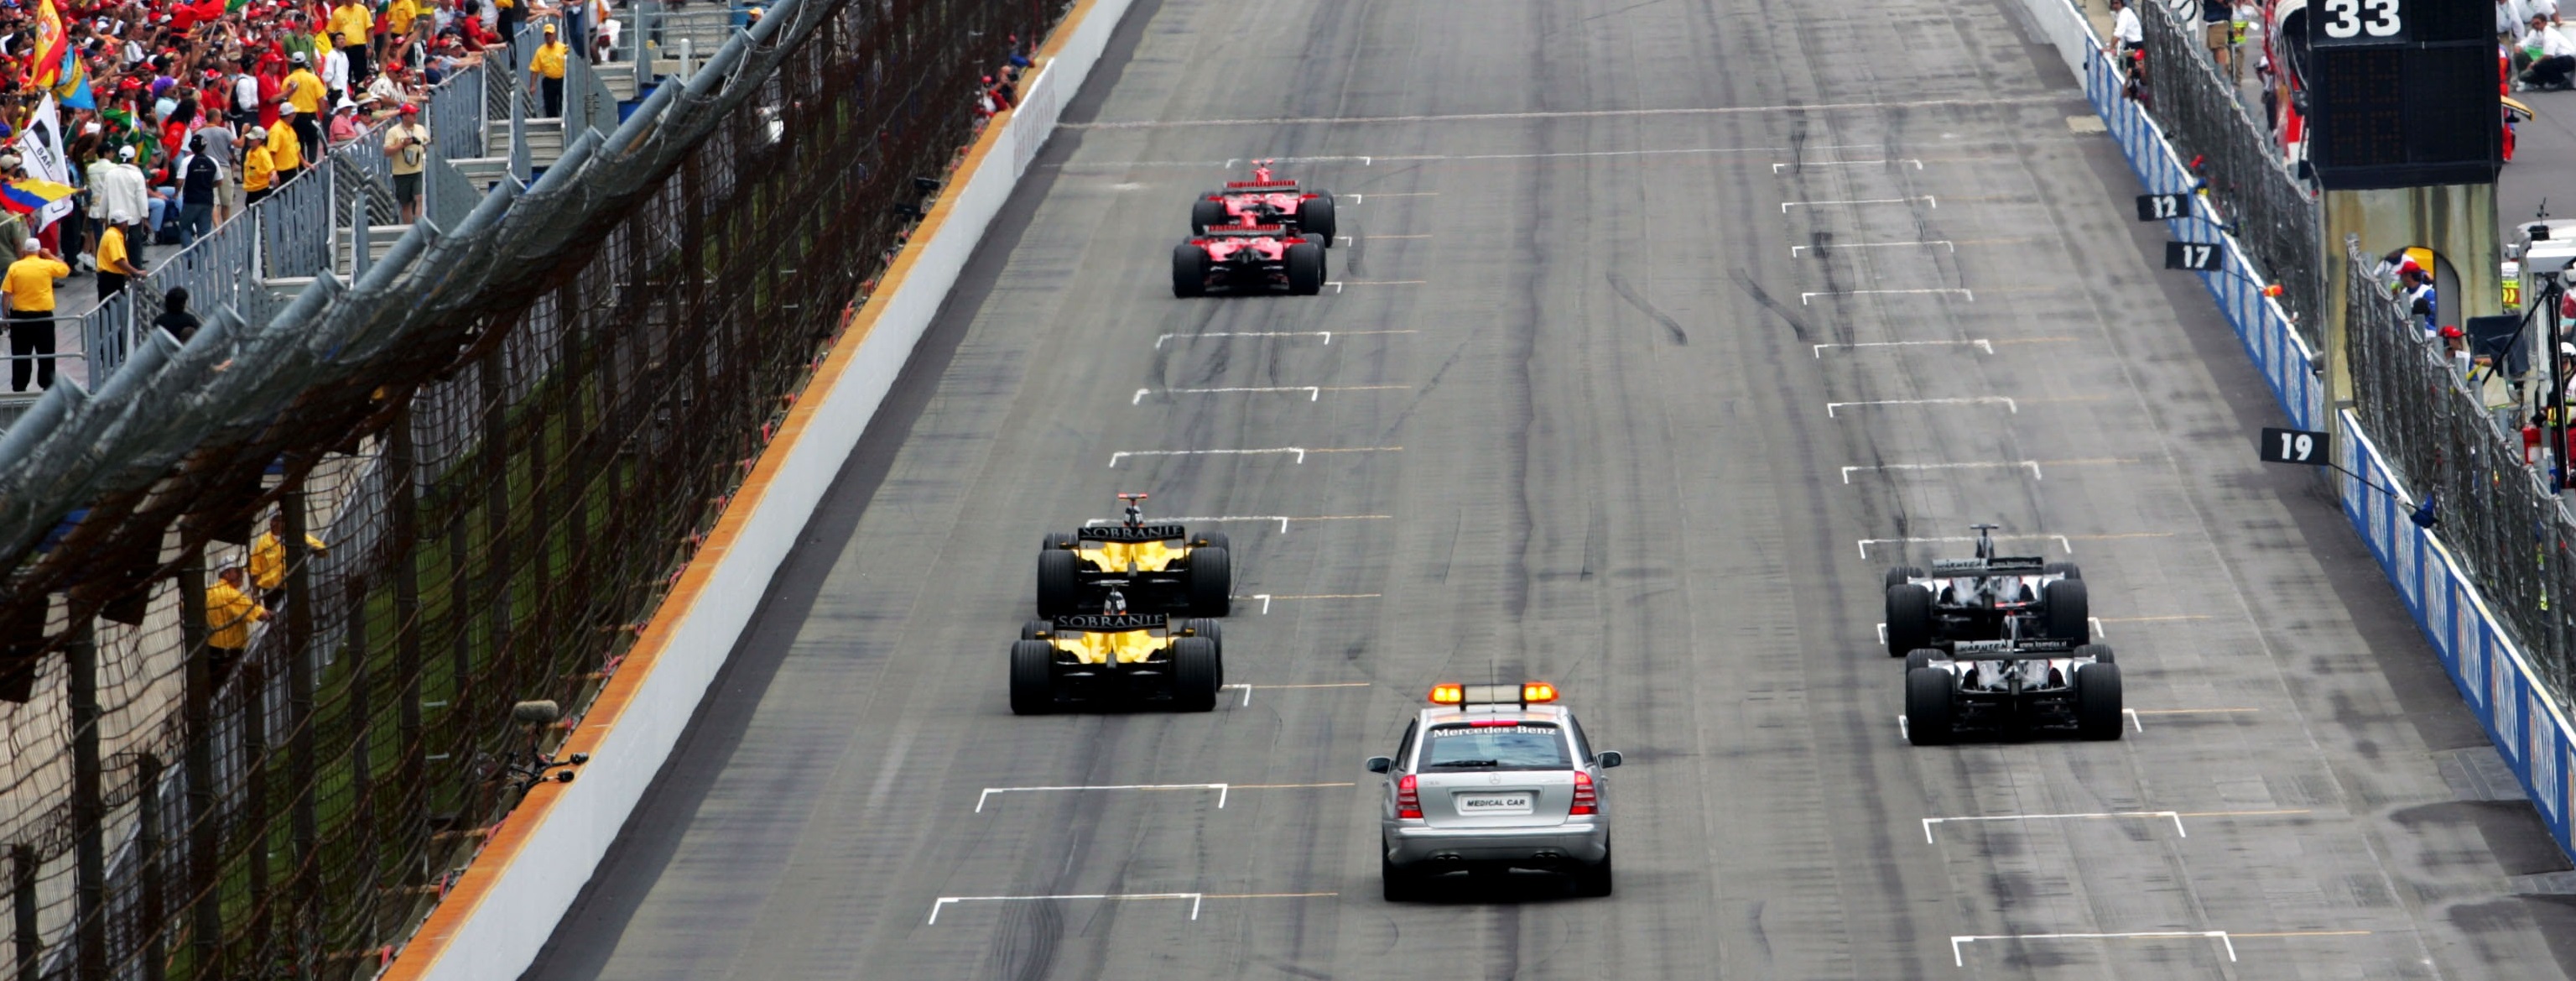 USA GP F1 2005